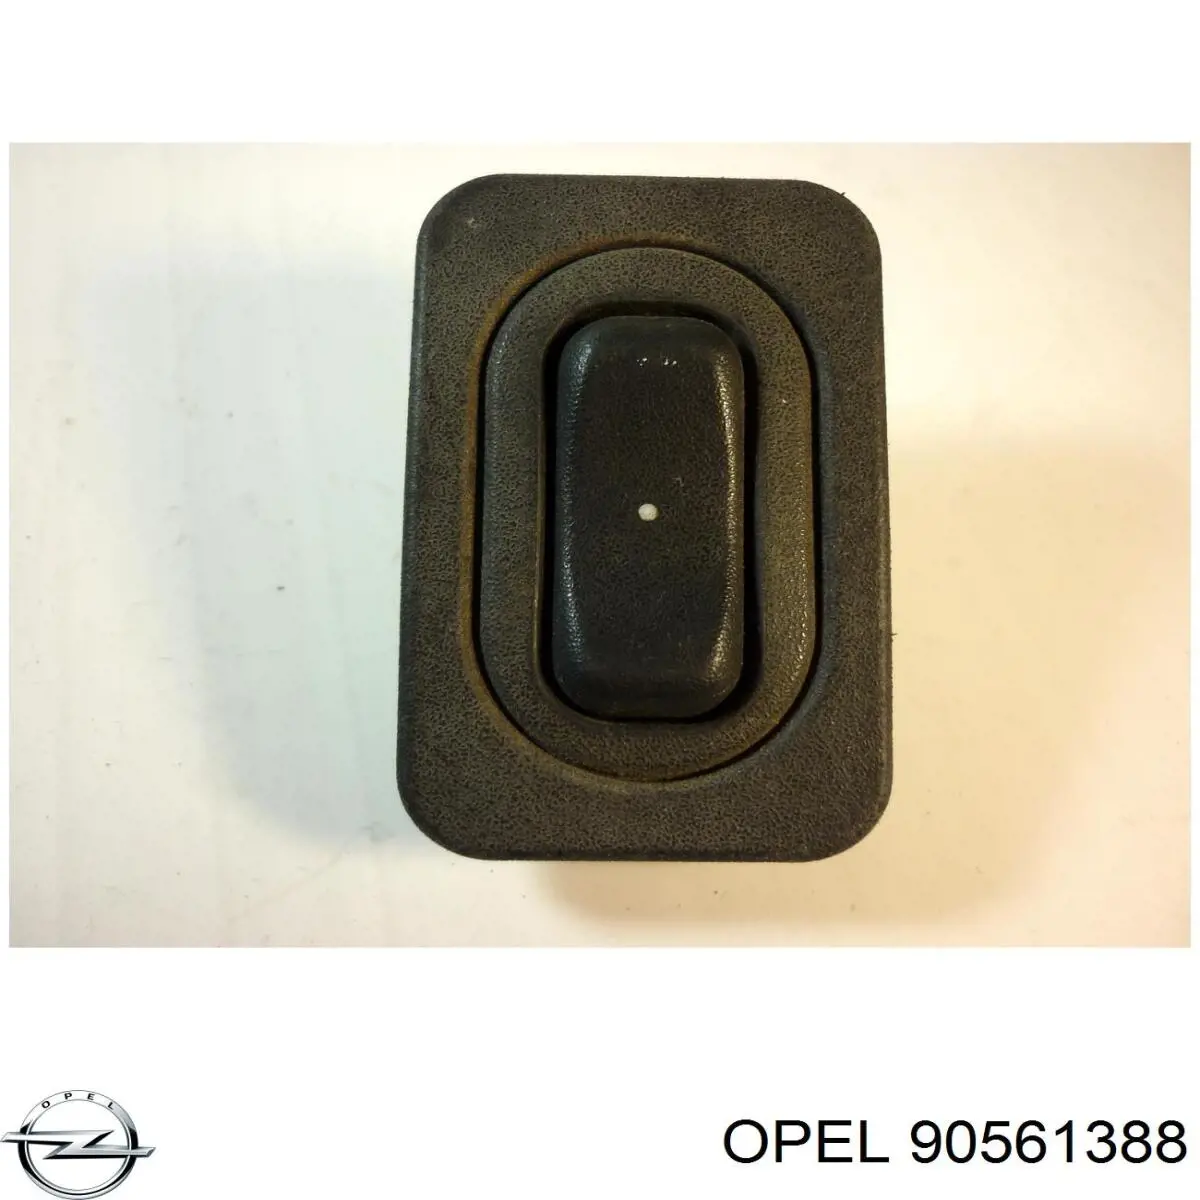 90561388 Opel botón de encendido, motor eléctrico, elevalunas, trasero